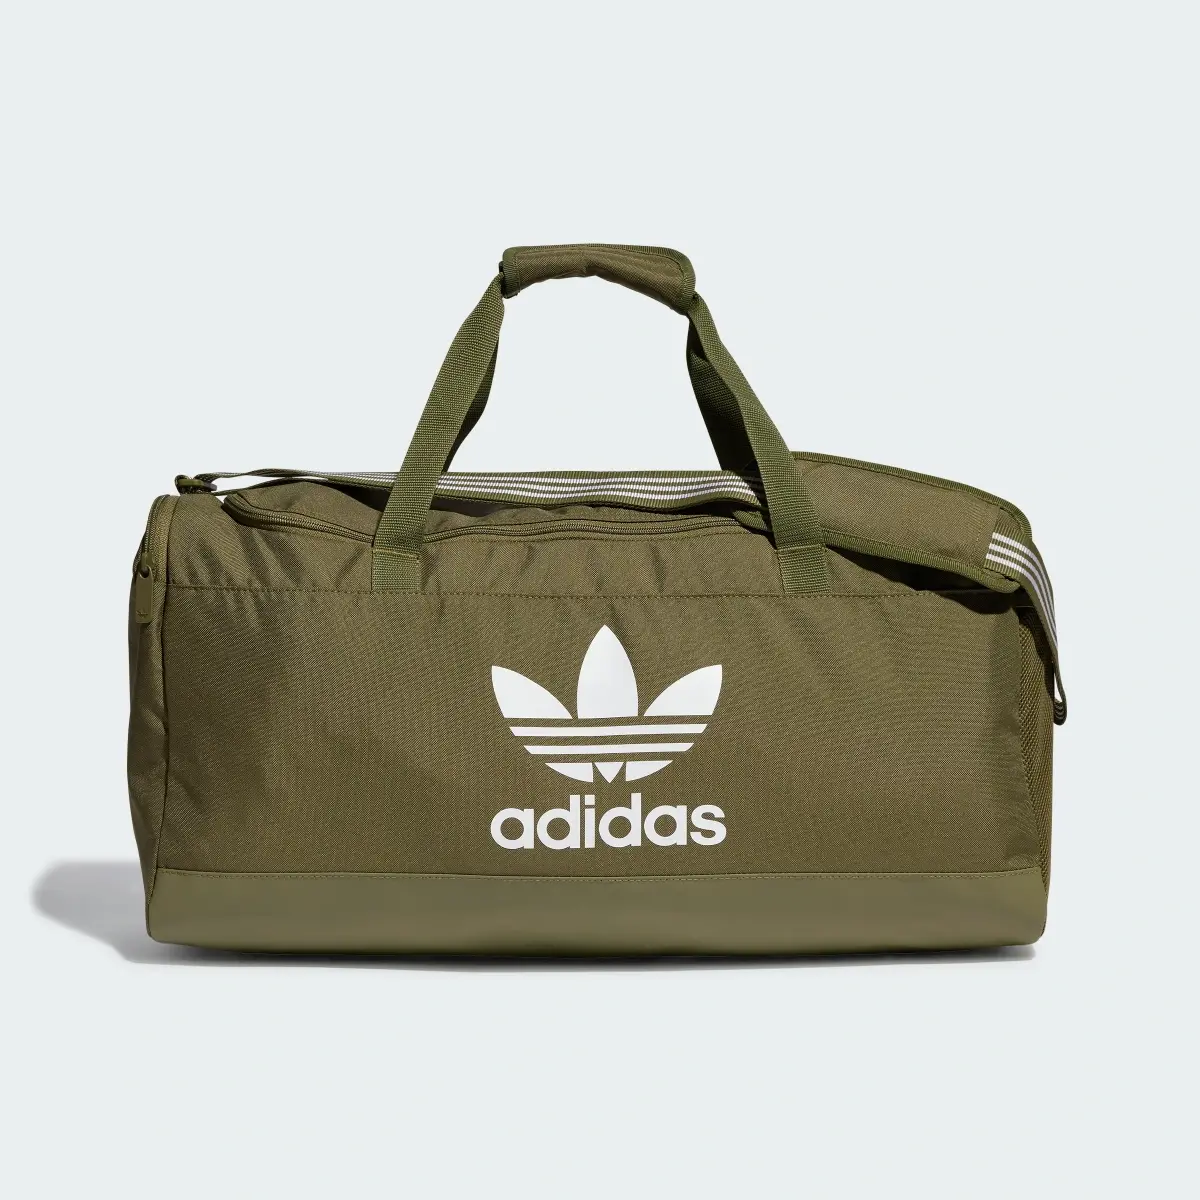 Adidas Duffel Bag. 2